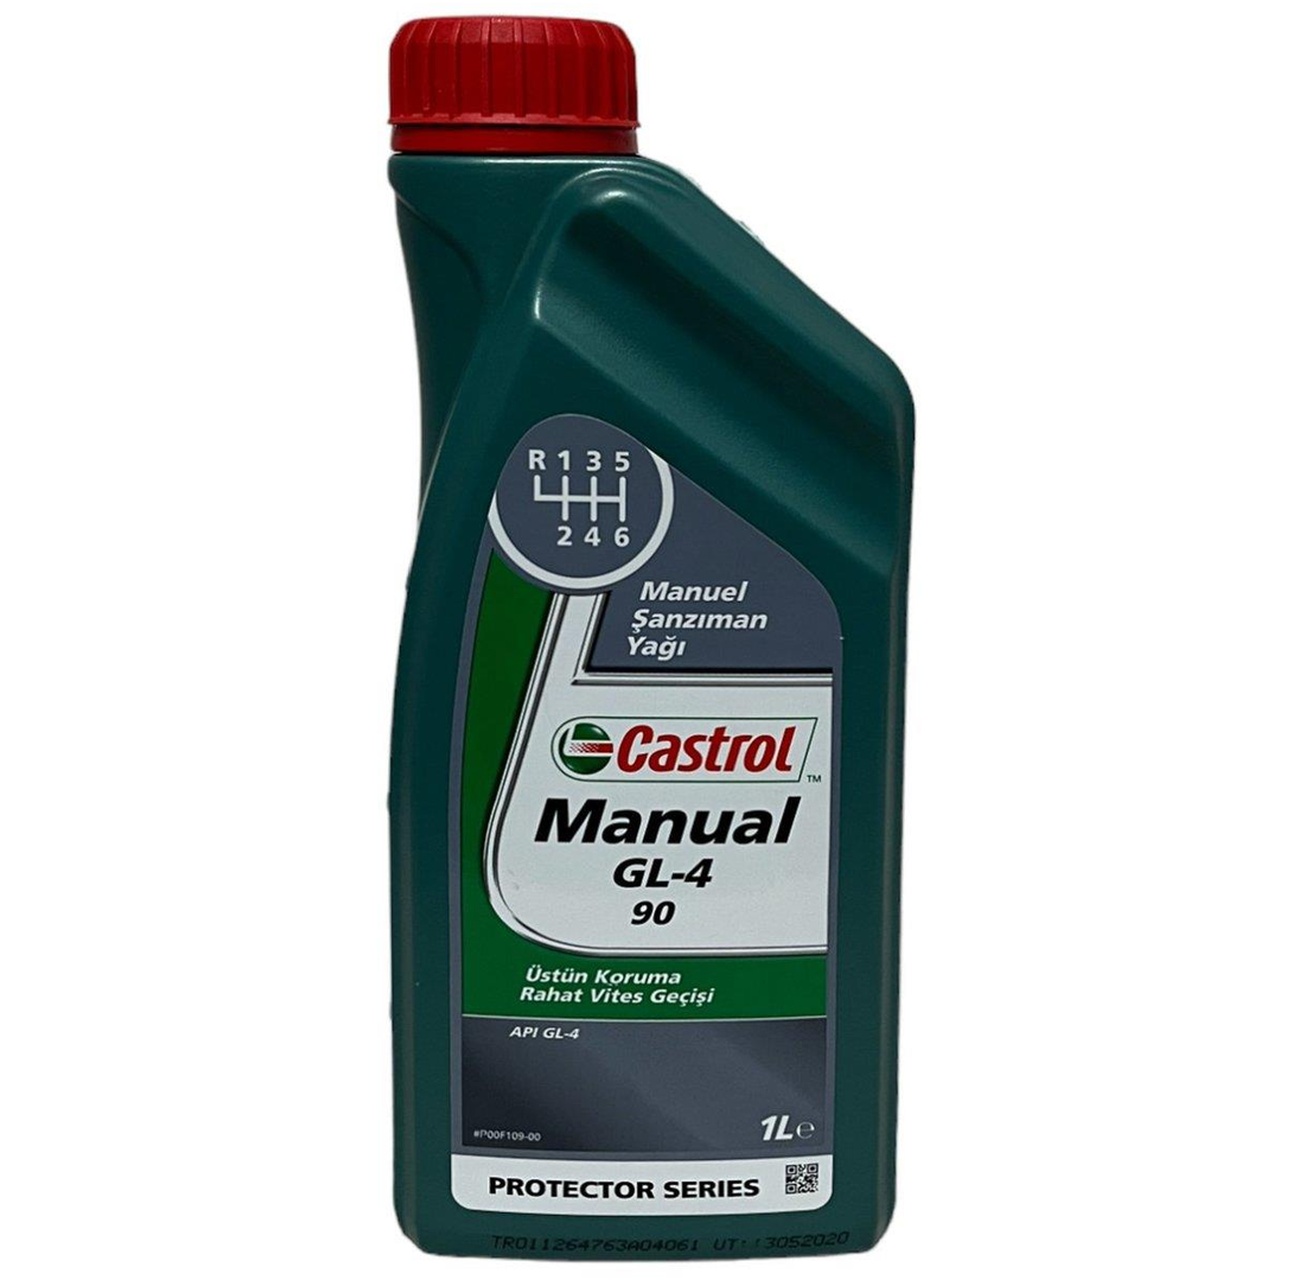 Castrol Manual GL-4 90 Manuel Şanzıman Yağı 1 L